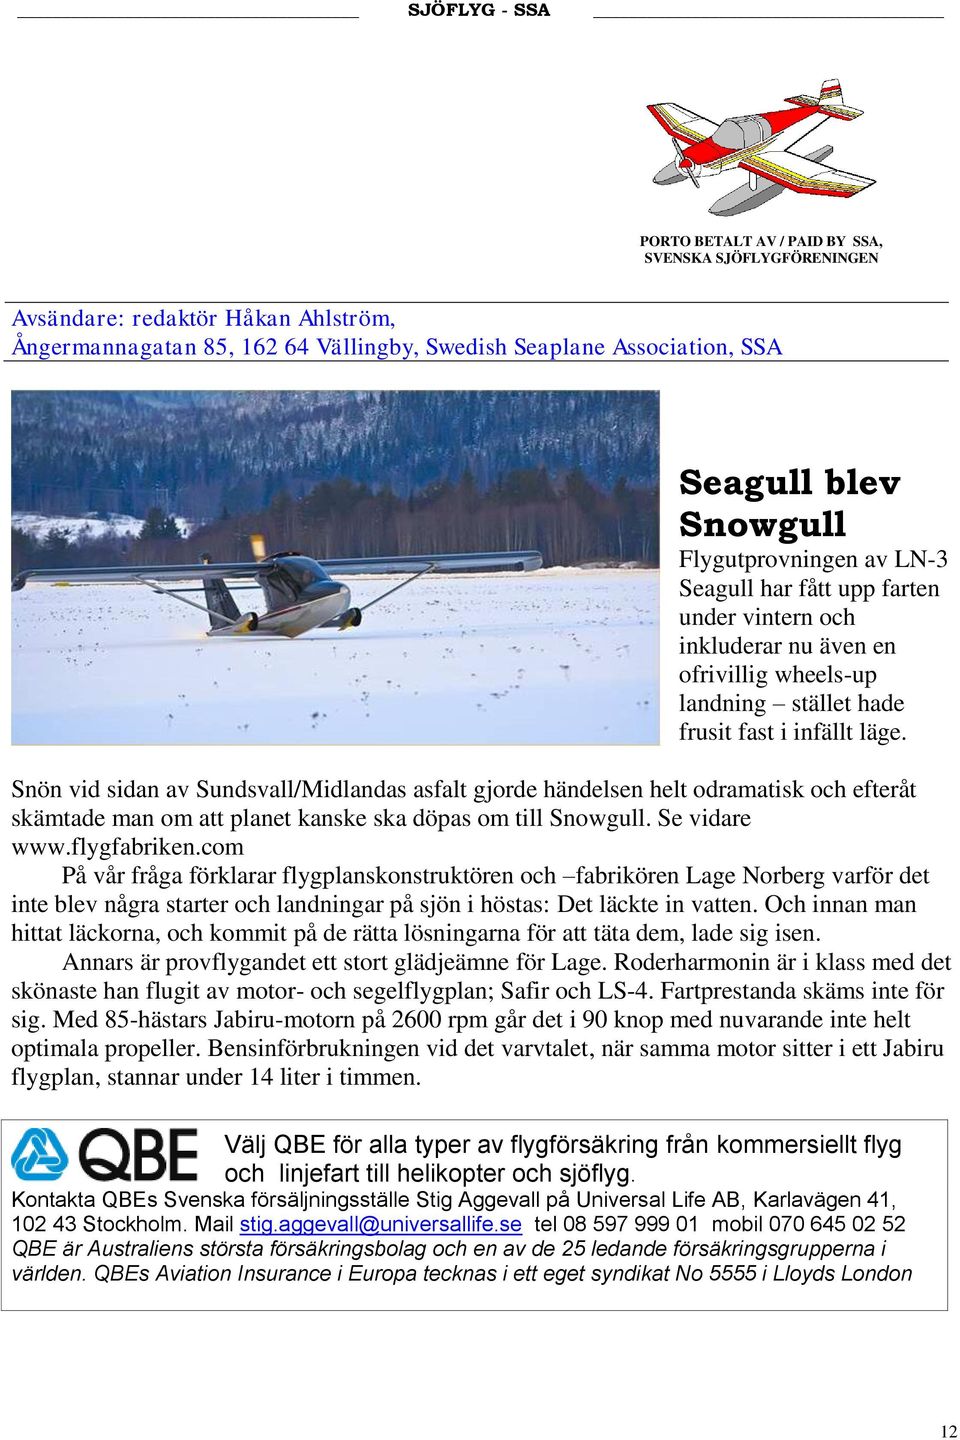 Snön vid sidan av Sundsvall/Midlandas asfalt gjorde händelsen helt odramatisk och efteråt skämtade man om att planet kanske ska döpas om till Snowgull. Se vidare www.flygfabriken.